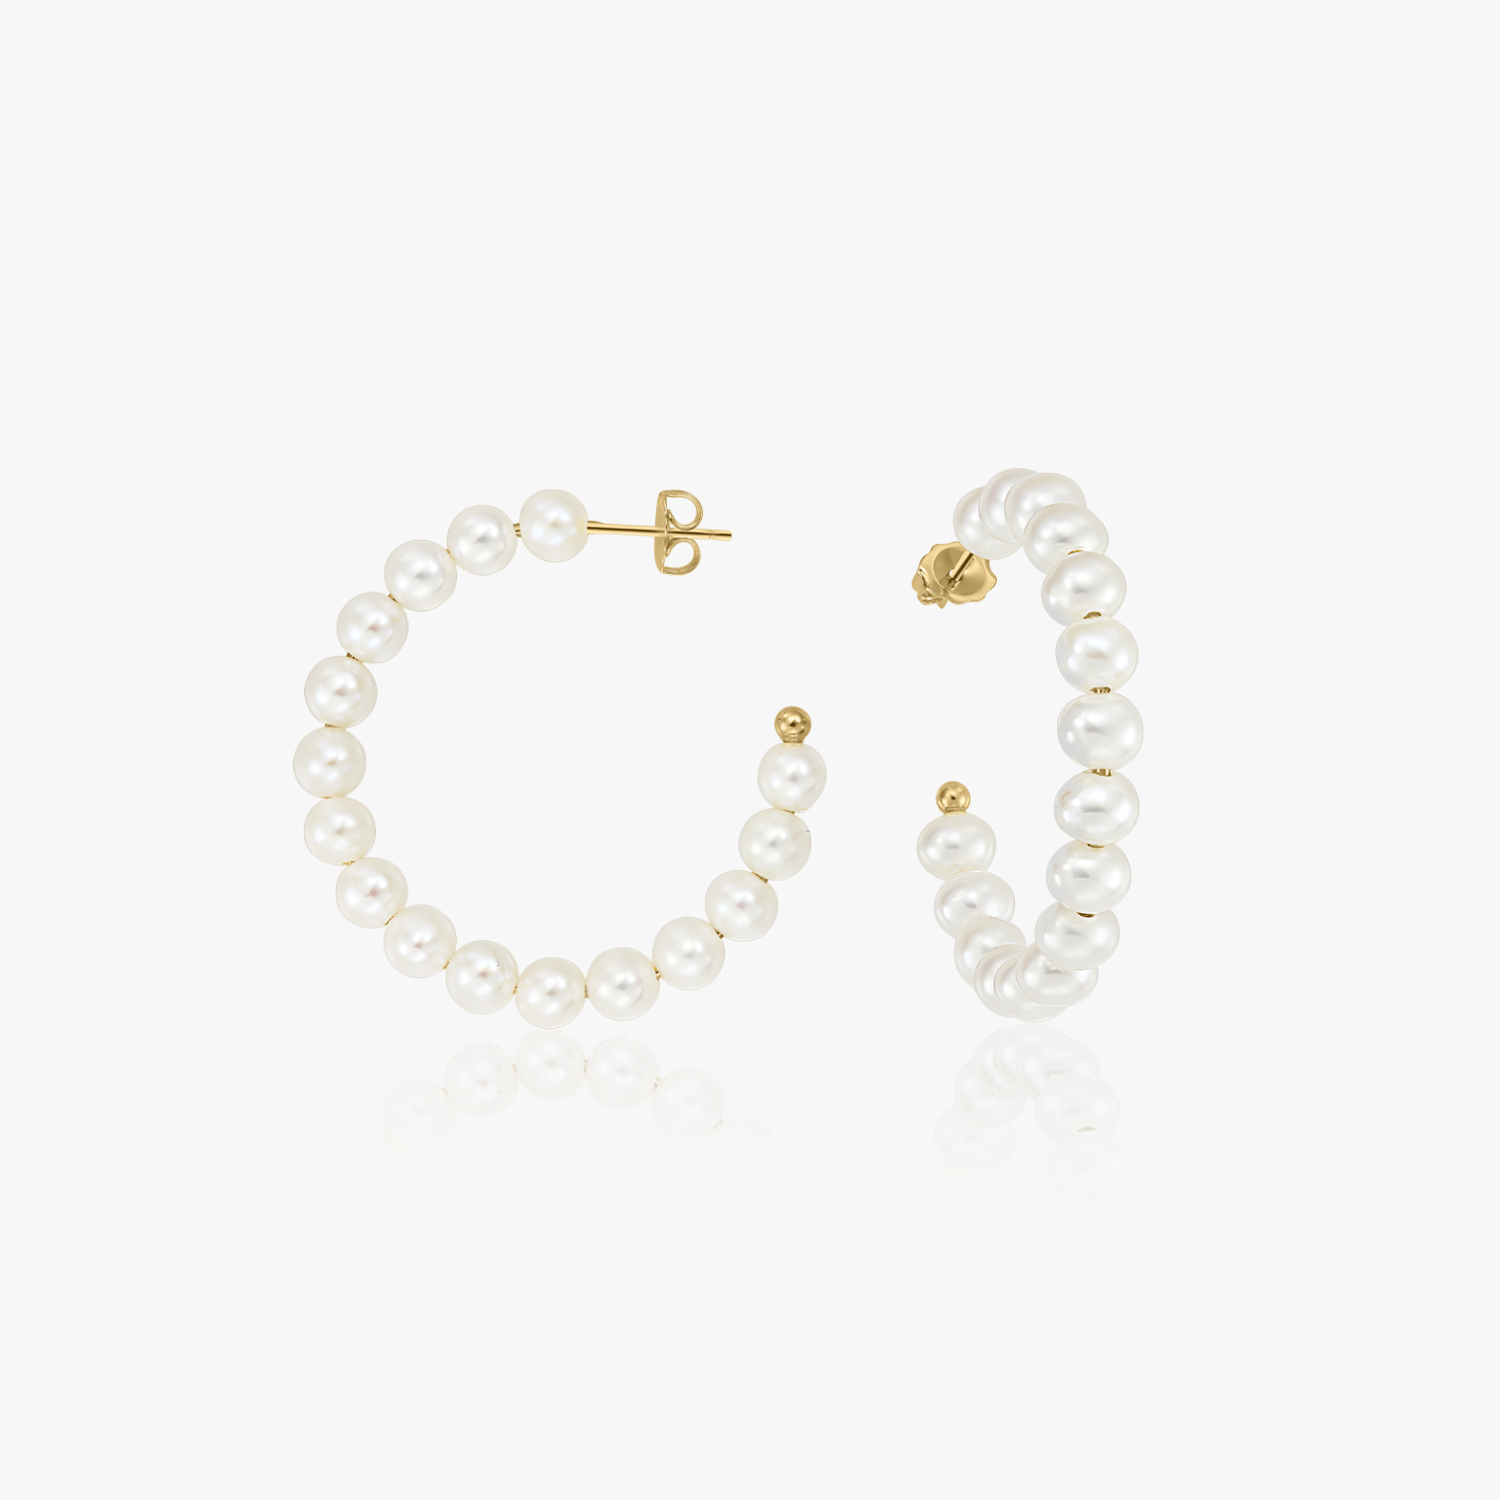 Golden Pearl Hoops silver earrings - Natural pearls